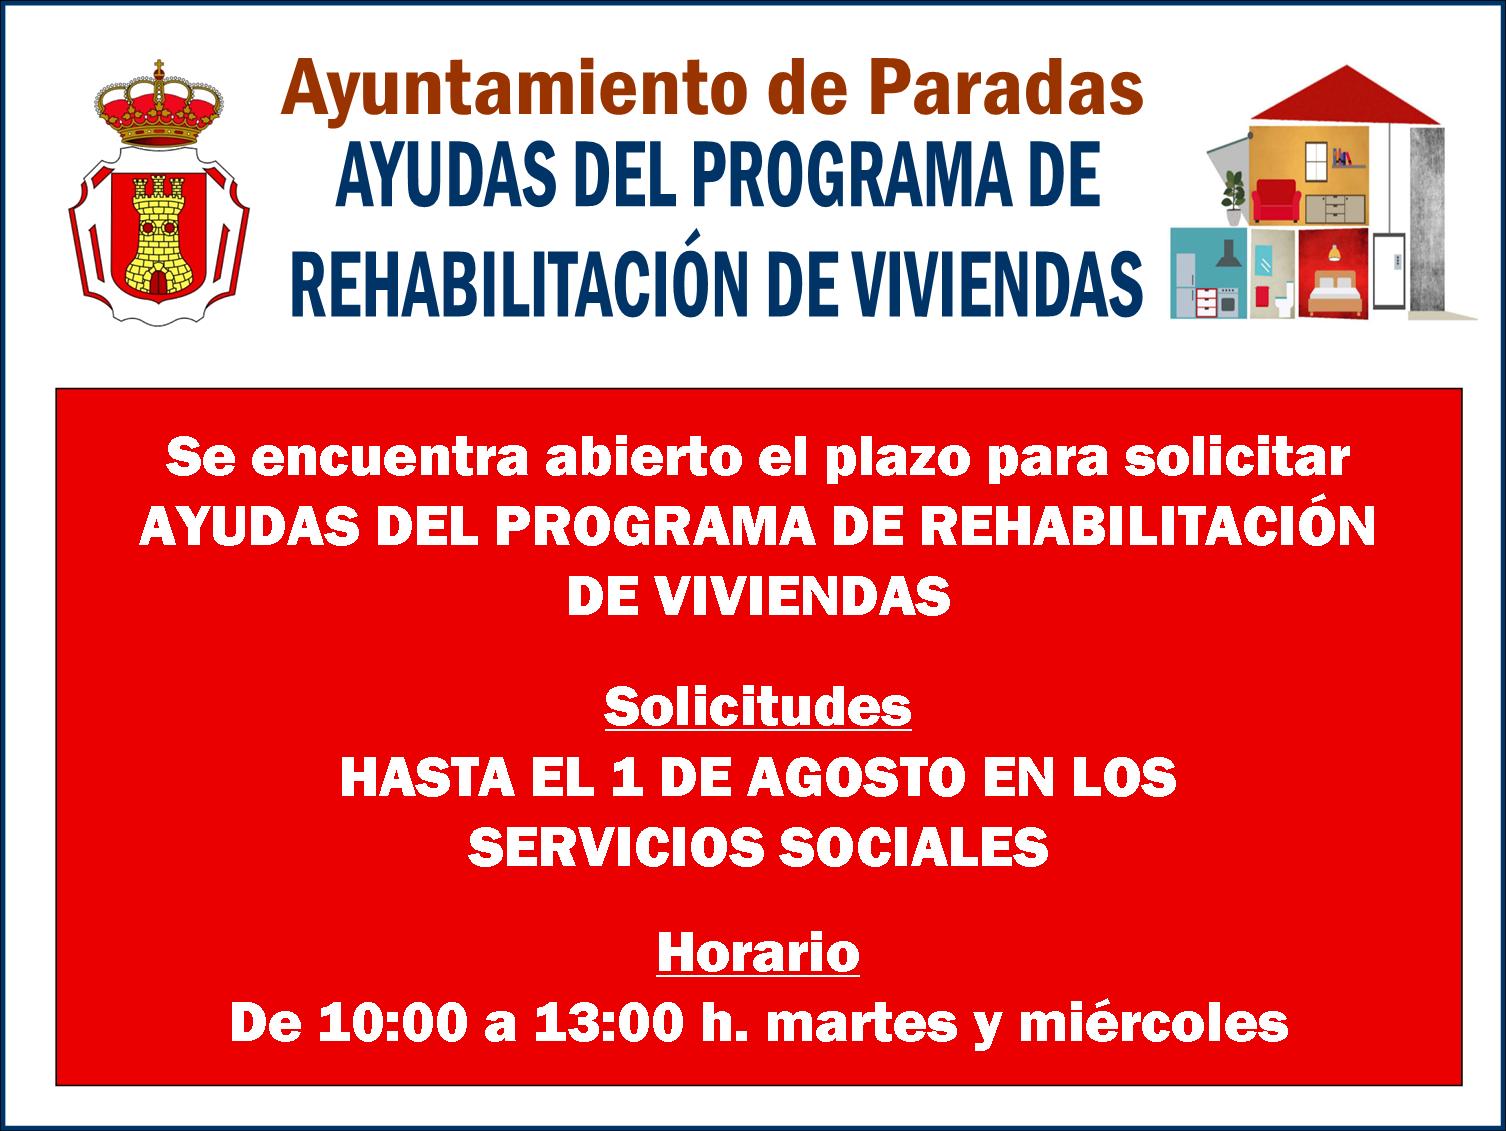 Rehabilitación de viviendas 2019